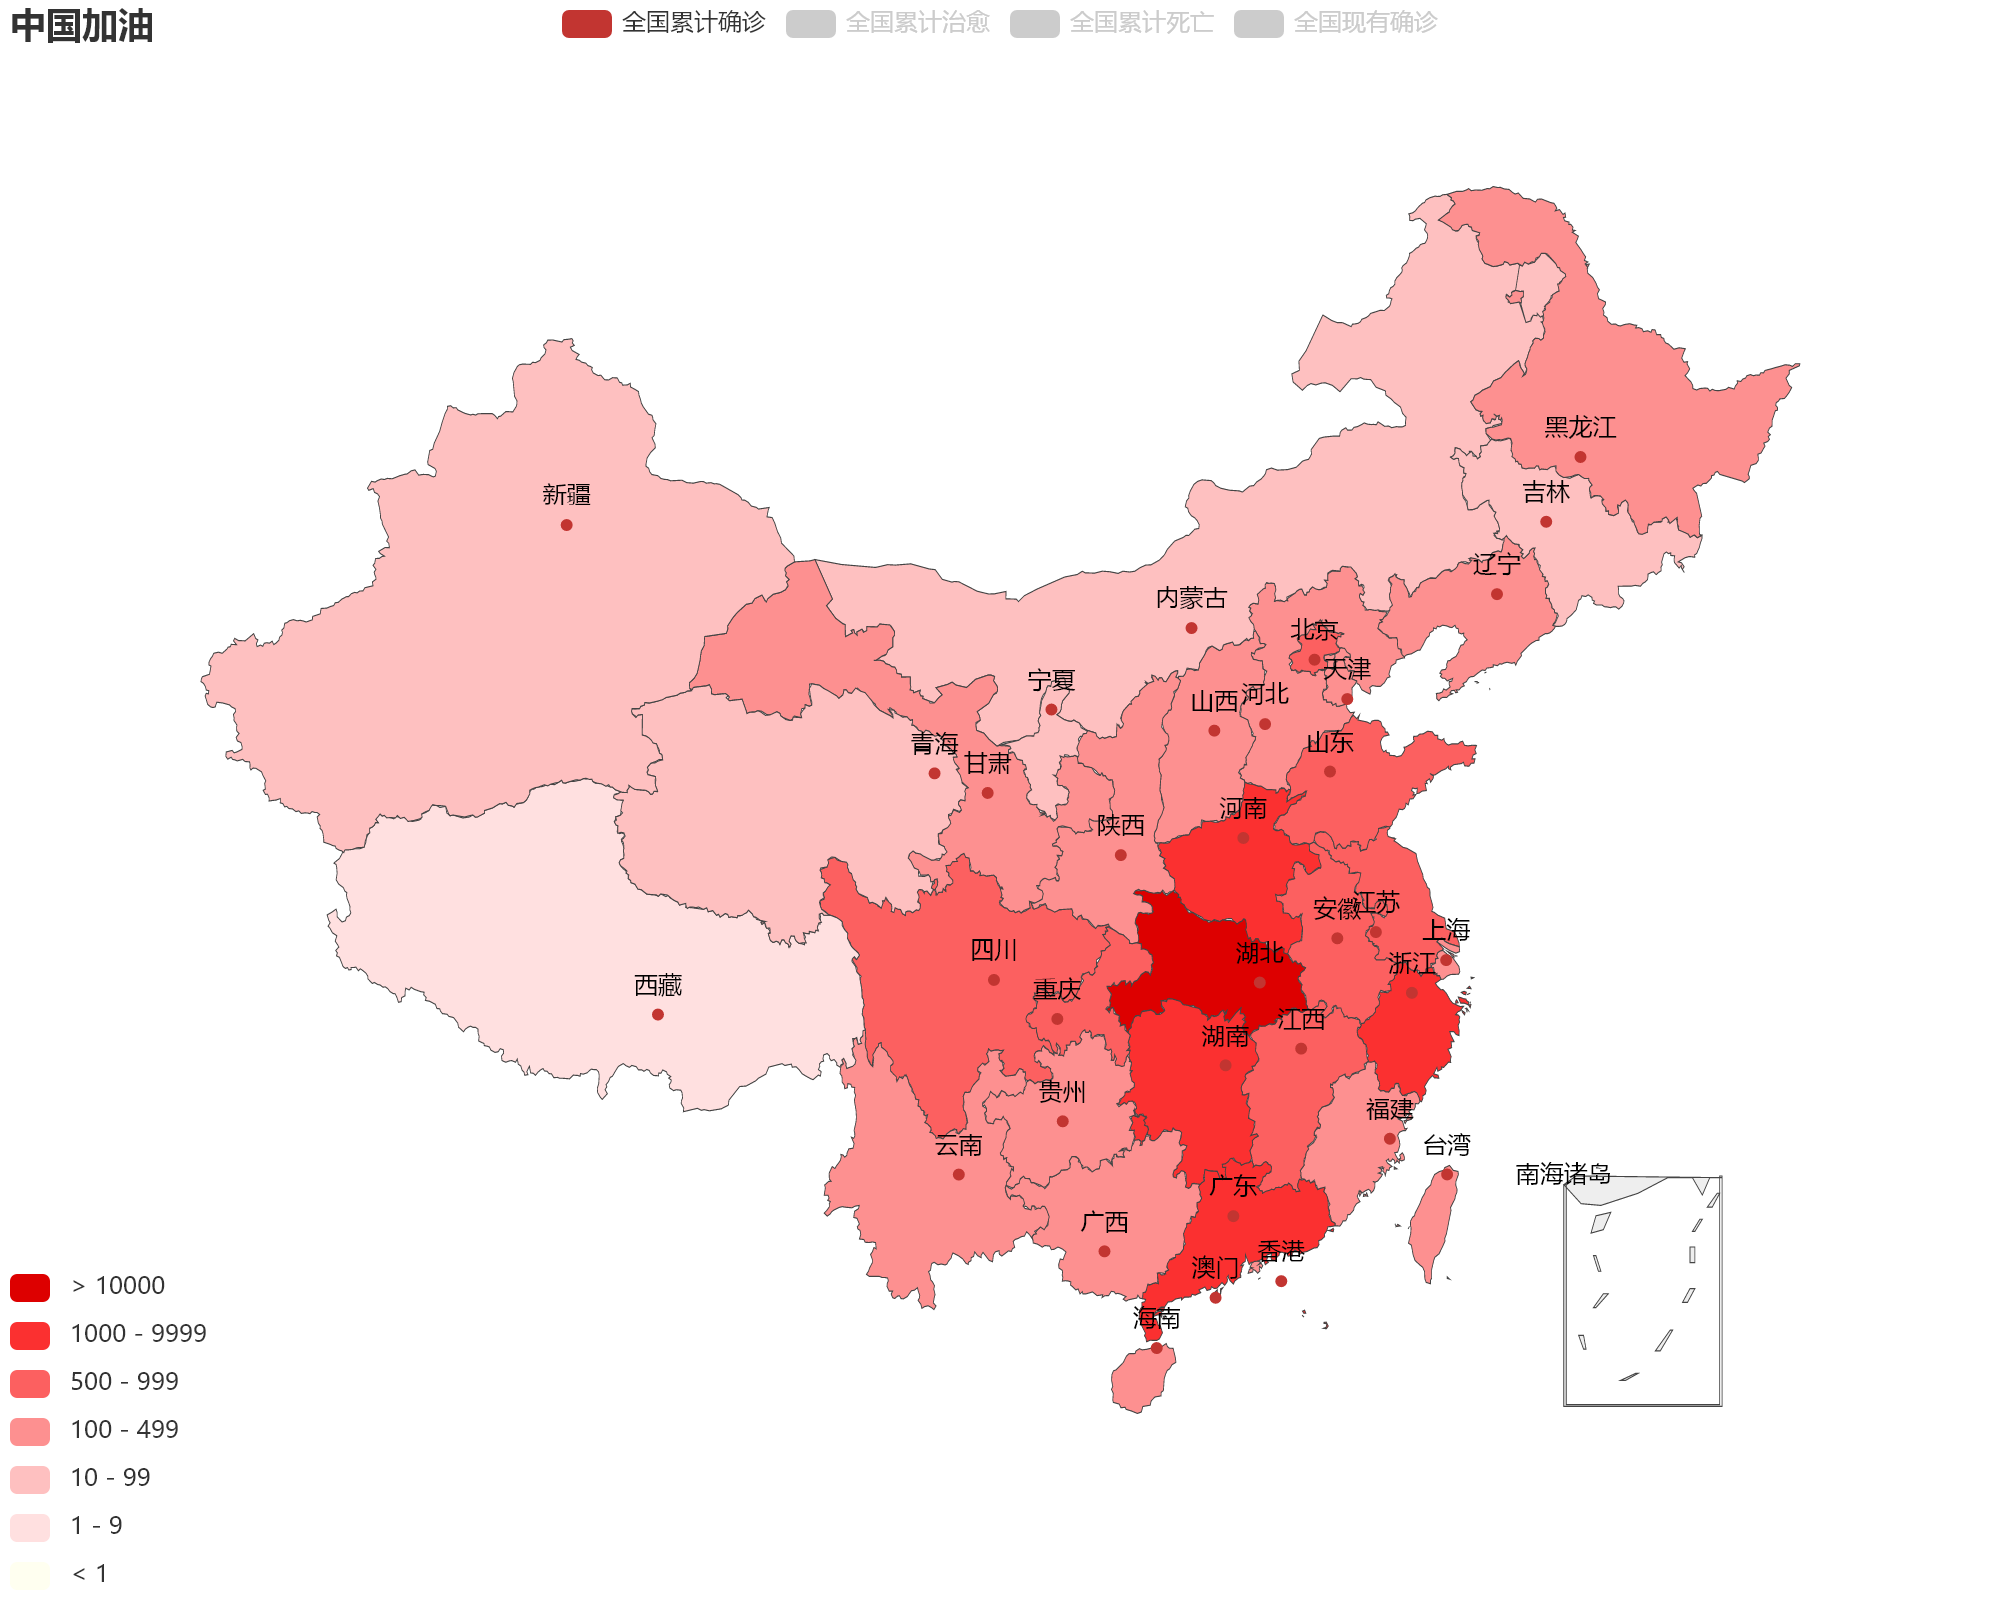 中国防疫地图图片